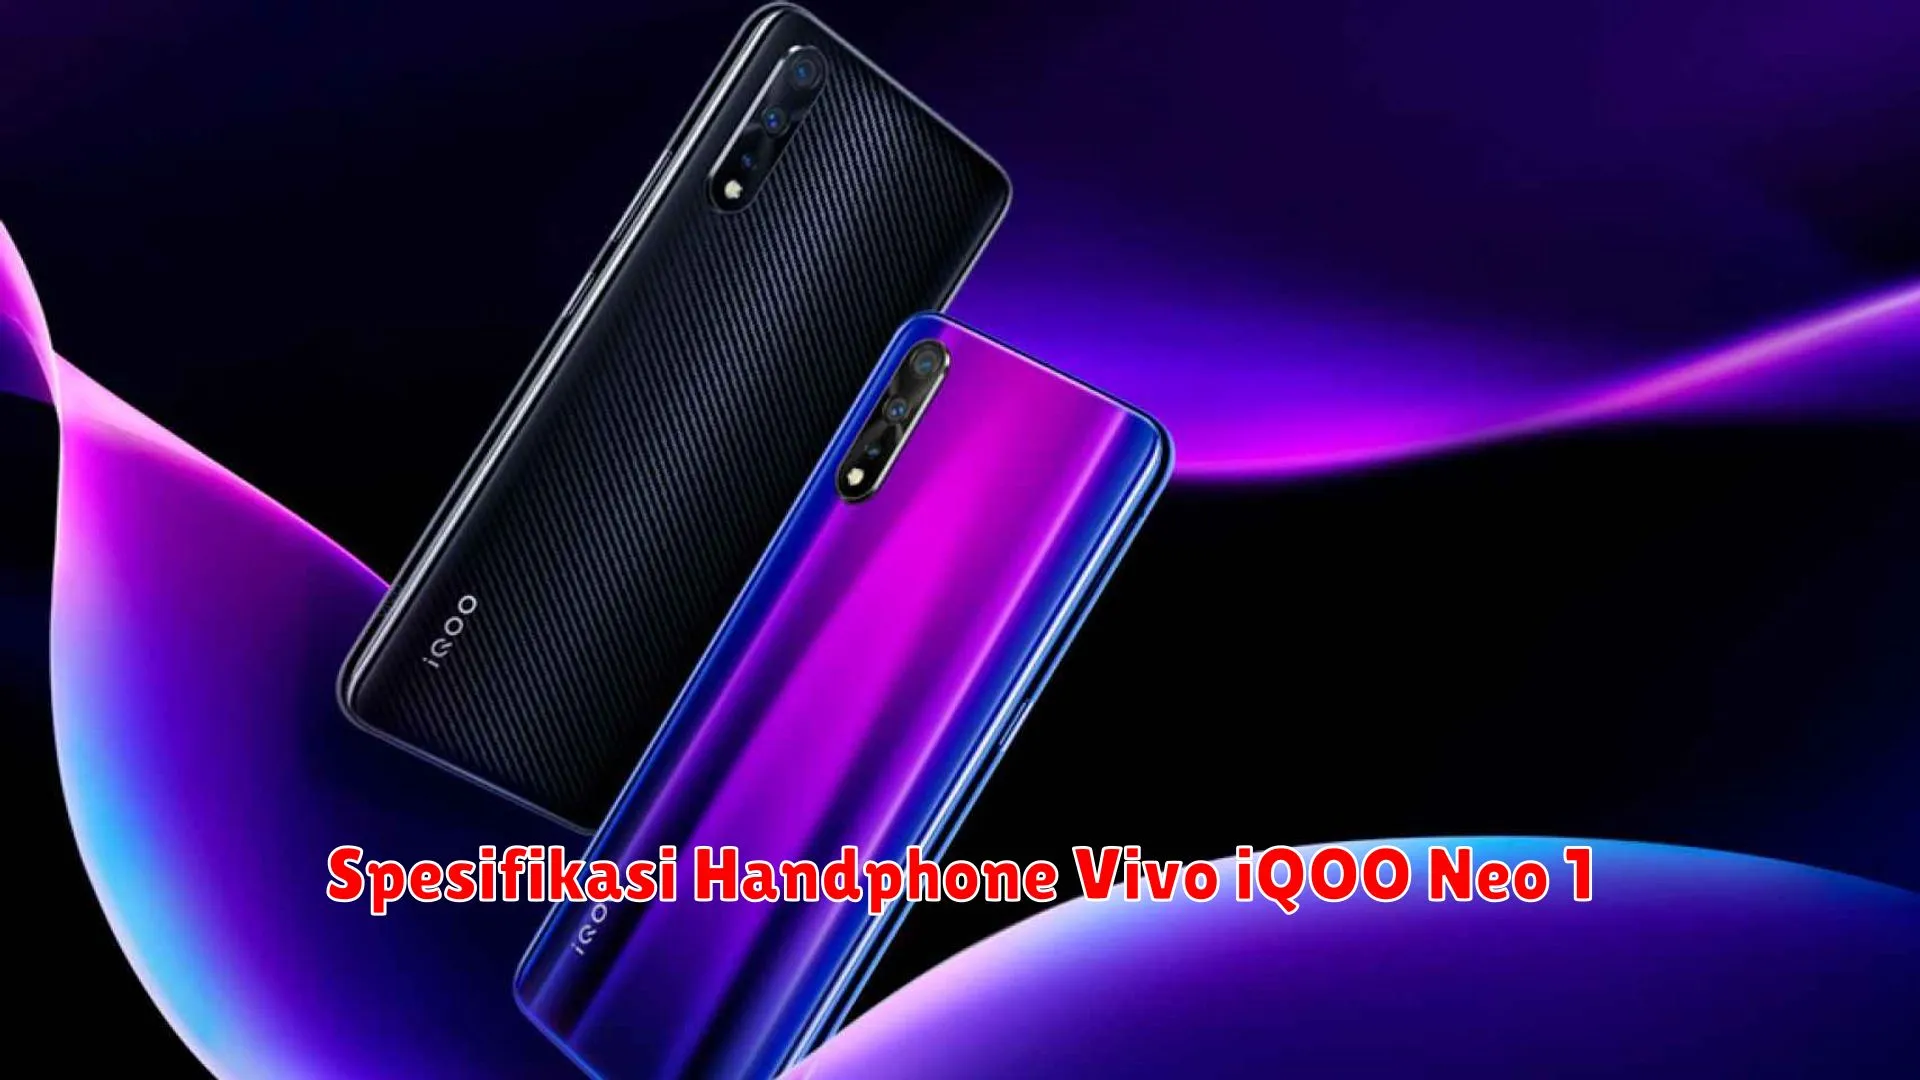 Spesifikasi Handphone Vivo iQOO Neo 1